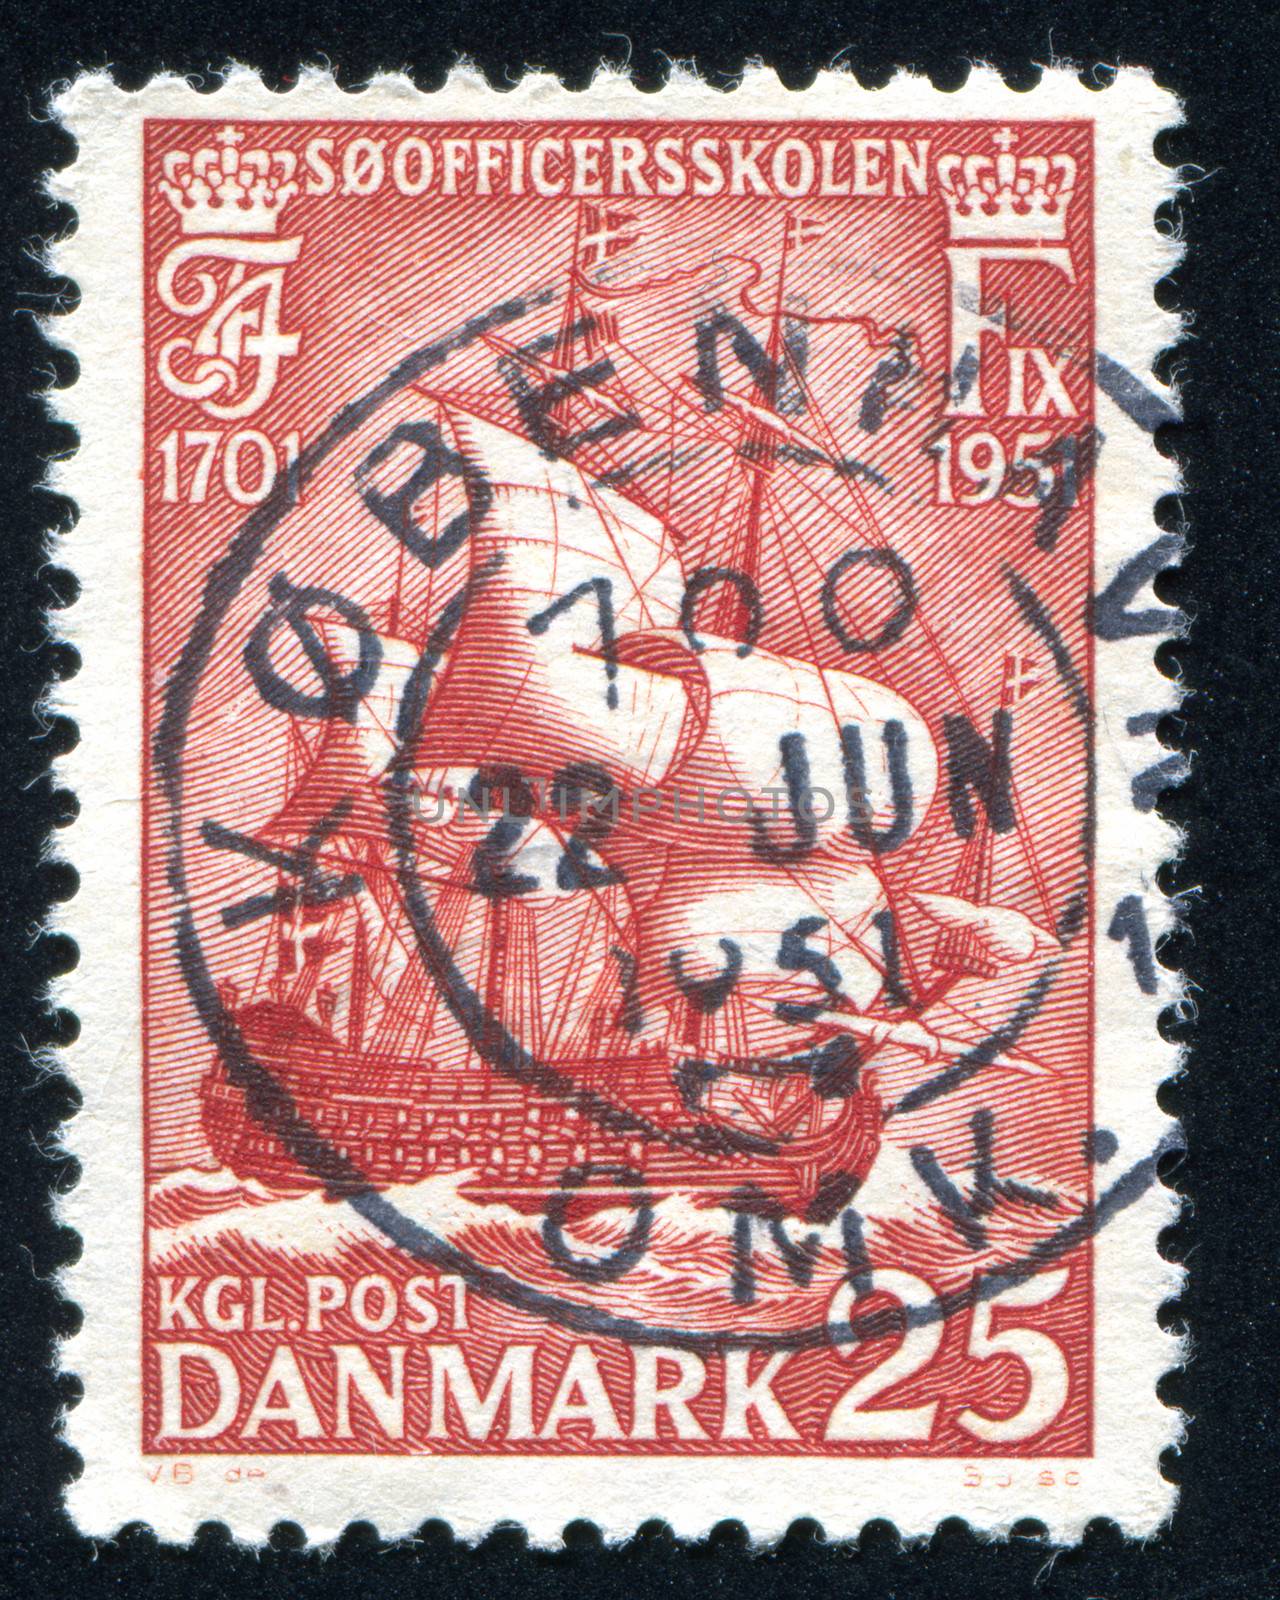 DENMARK - CIRCA 1951: stamp printed by Denmark, shows Warship, circa 1951